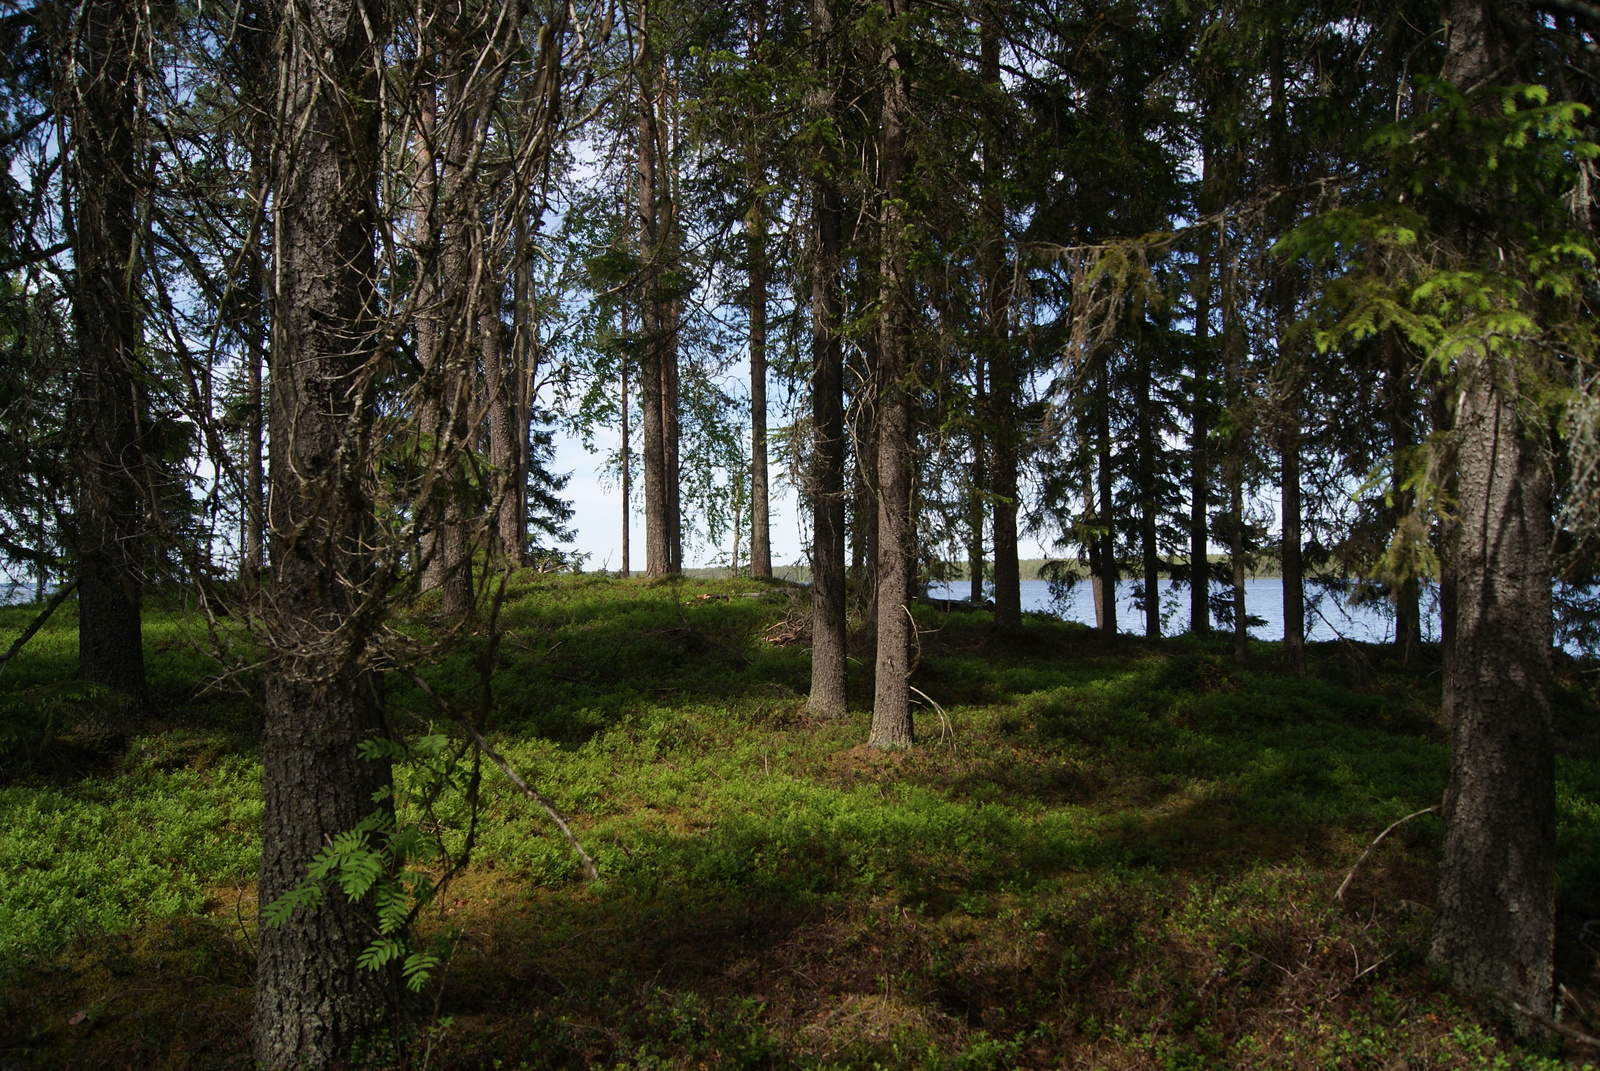 Kuusivaltainen metsä kasvaa loivasti kumpuilevassa maastossa. Puiden takana häämöttää järvi.